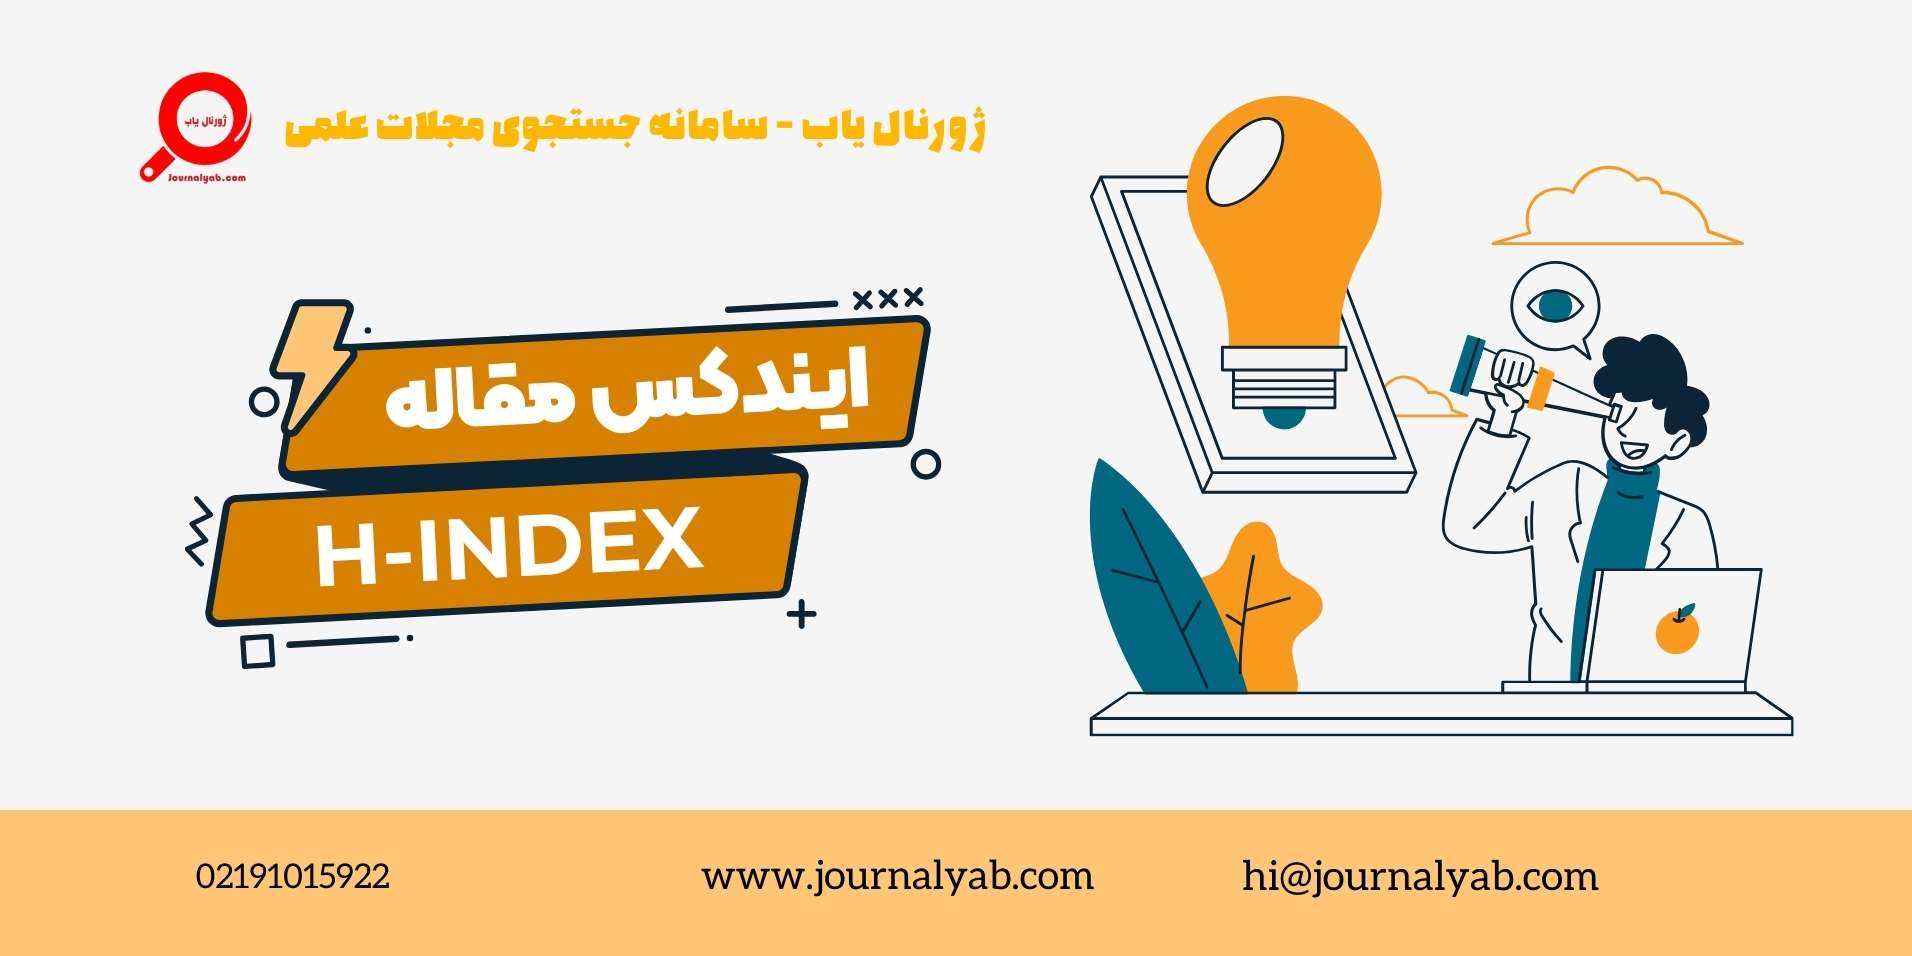 ایندکس مقاله چیست؟ | H-index چیست؟